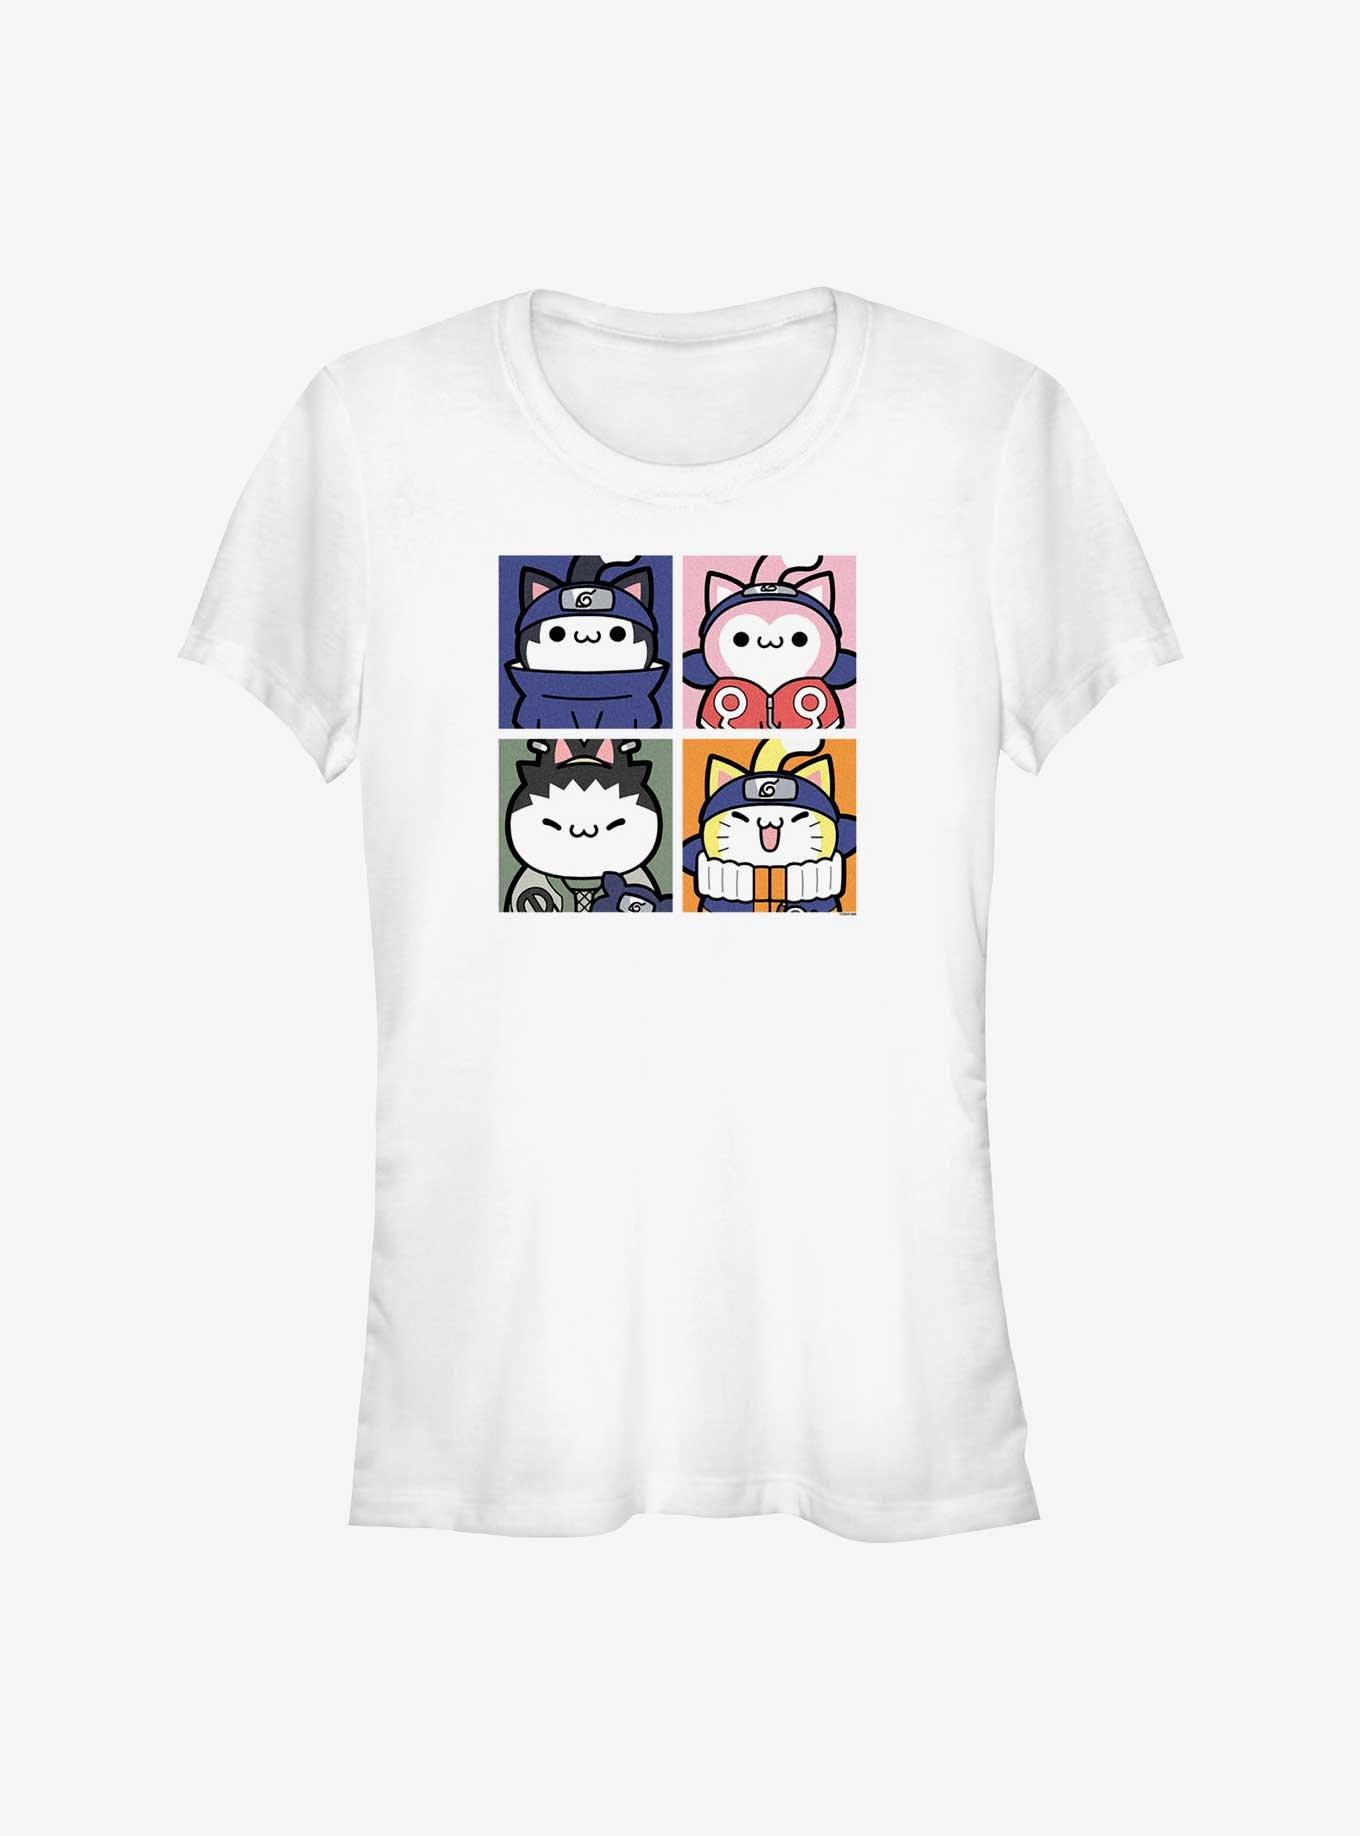 Naruto Cat Team Sasuke Sakura Shikamaru and Naruto Girls T-Shirt, WHITE, hi-res